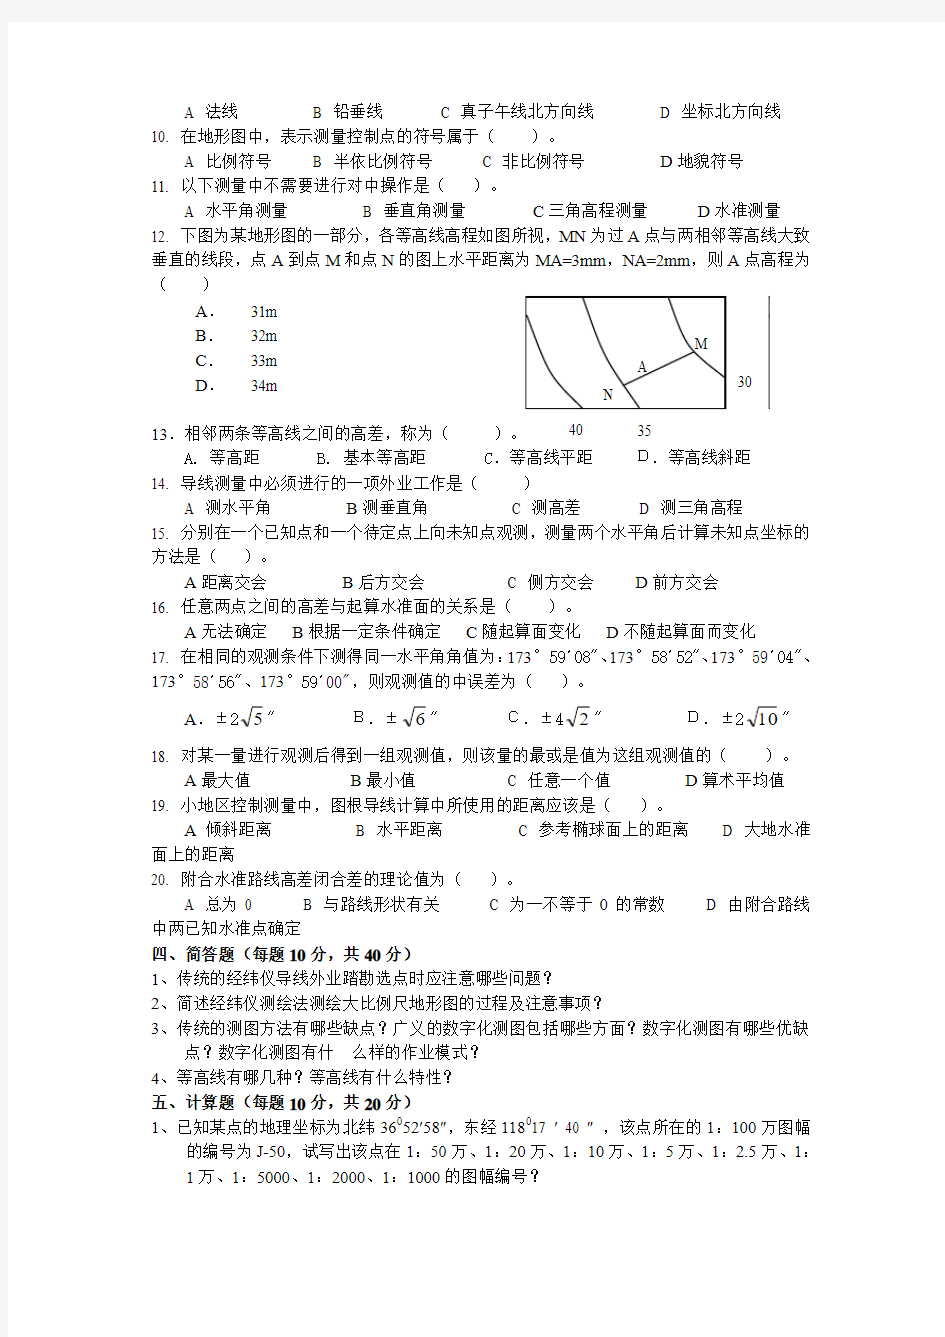 中国矿业大学大地测量学与测量工程考研2008年真题